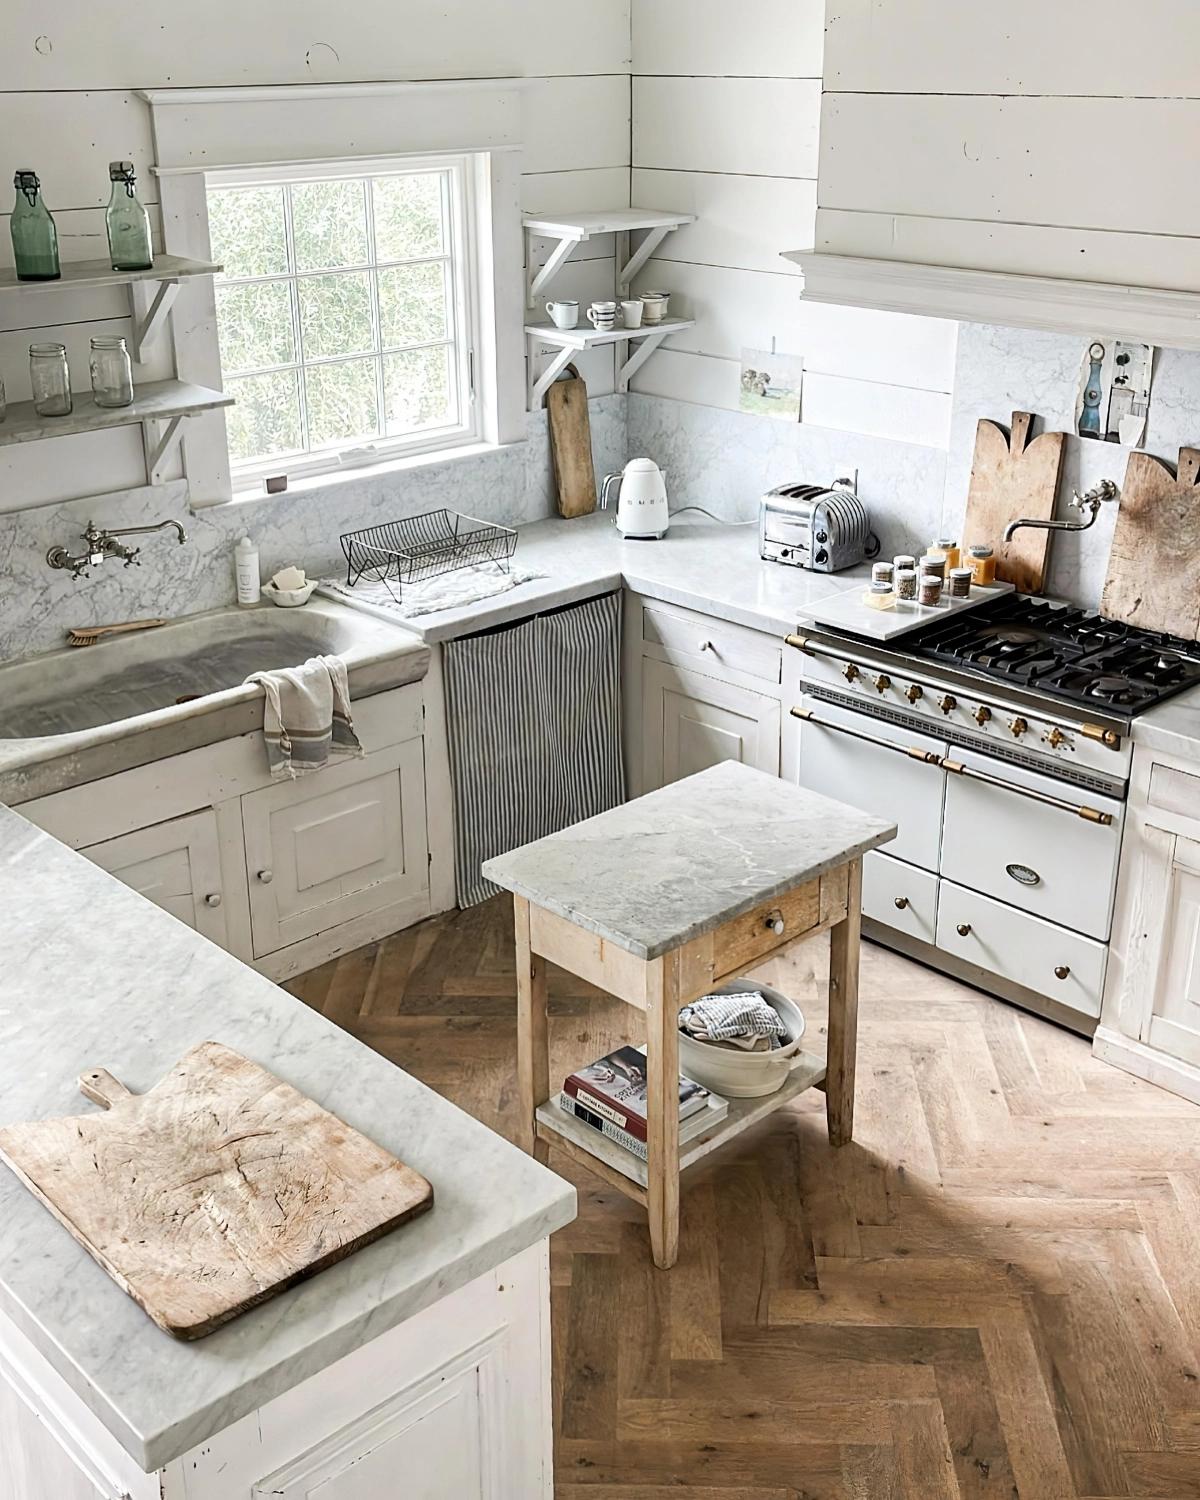 agencement cuisine en u parquet bois meubles blancs surface plan travail marbre gris